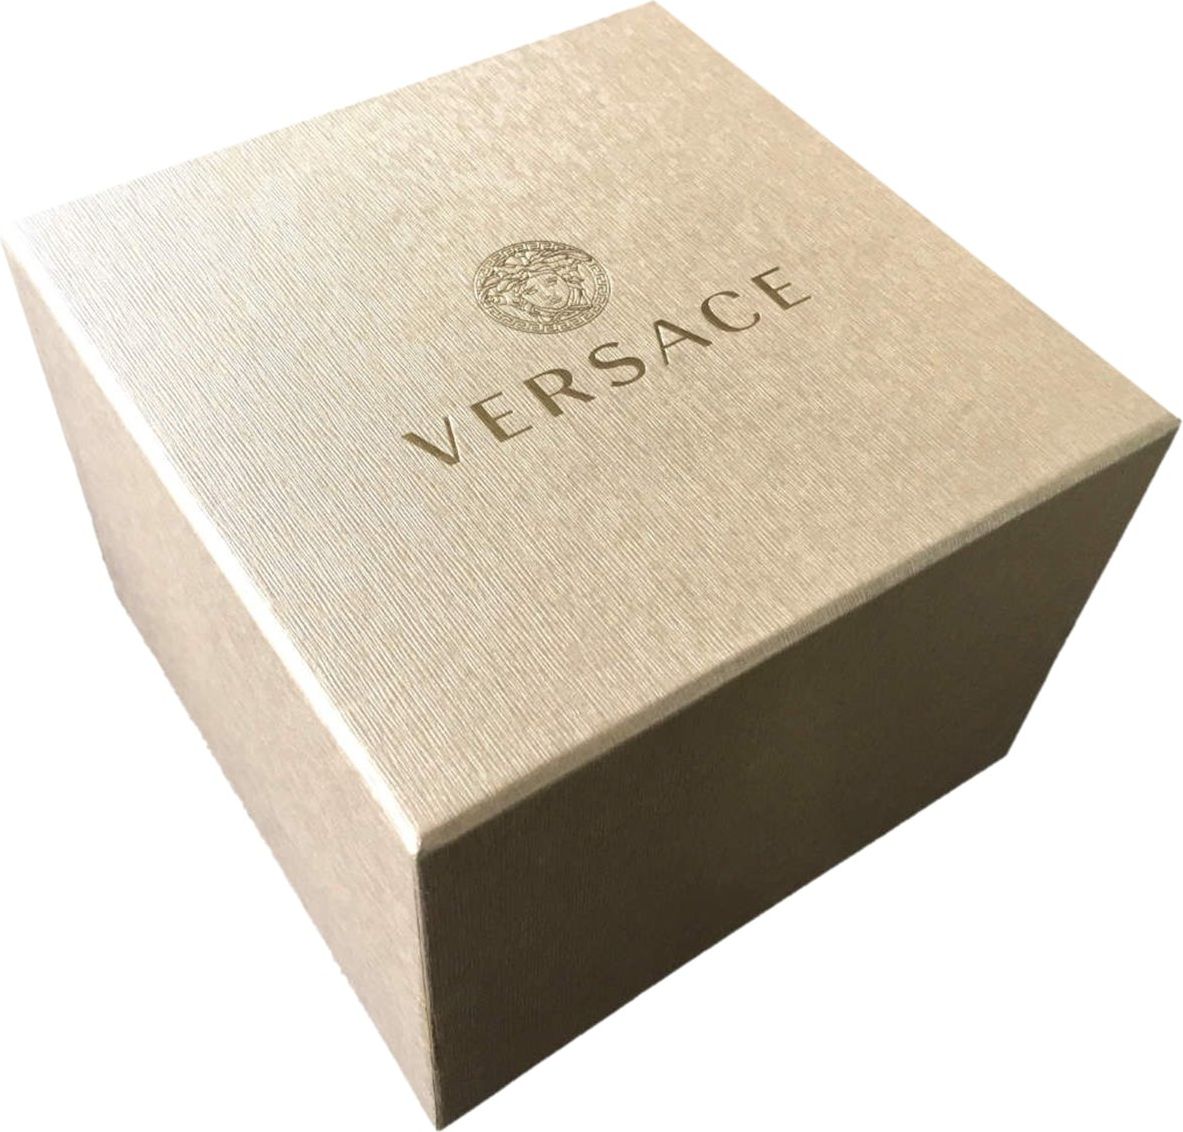 Versace V11070017 Hellenyium GMT heren horloge Zilver